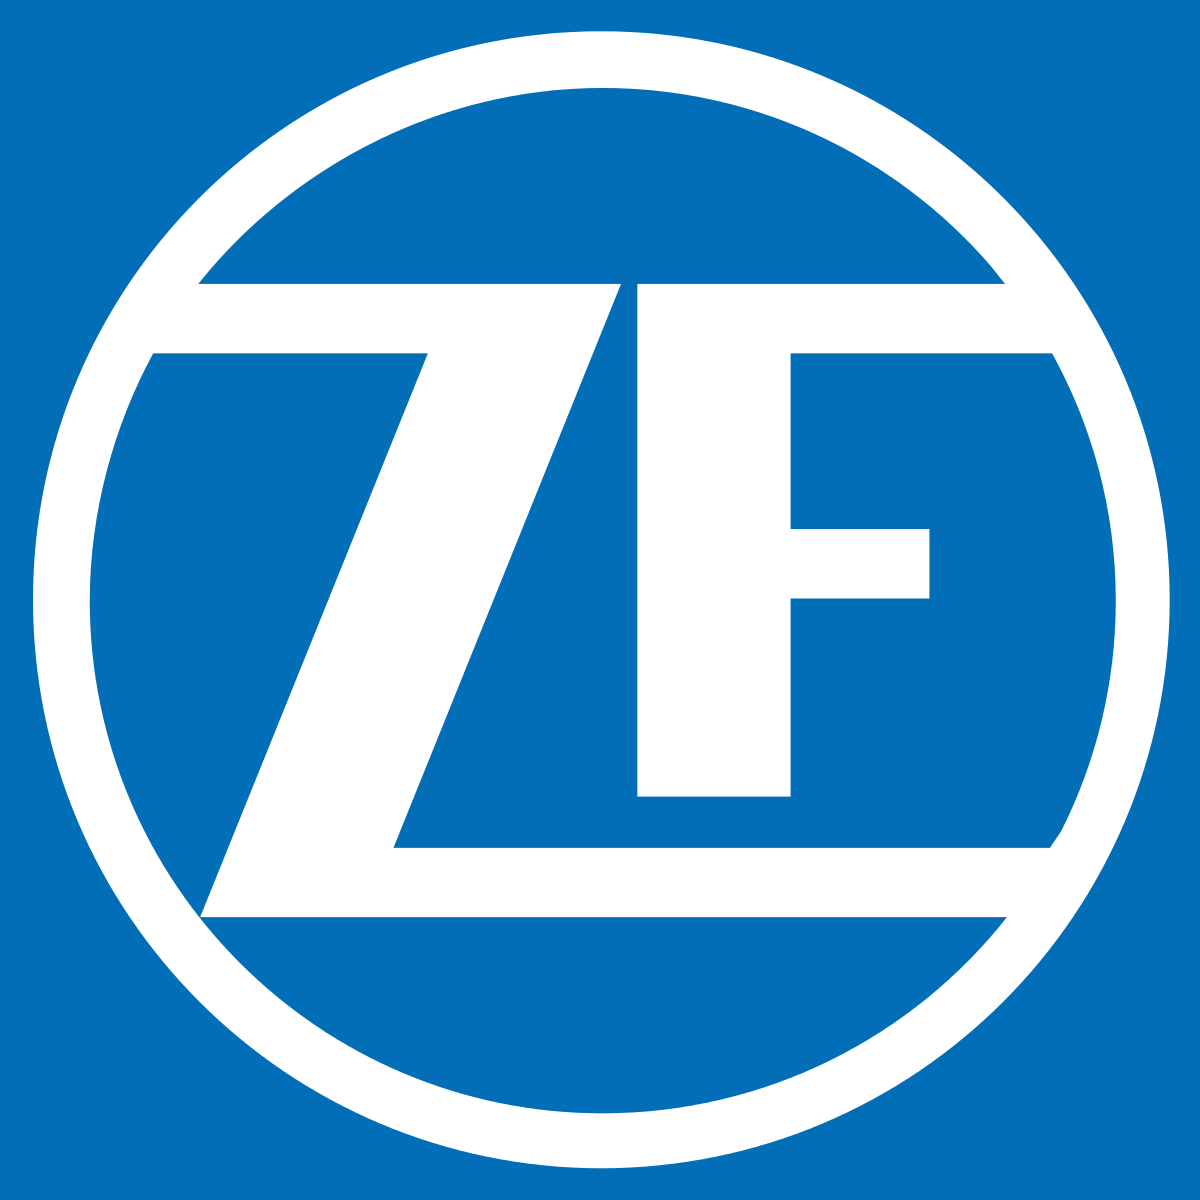 ZF Logo - ZF Friedrichshafen